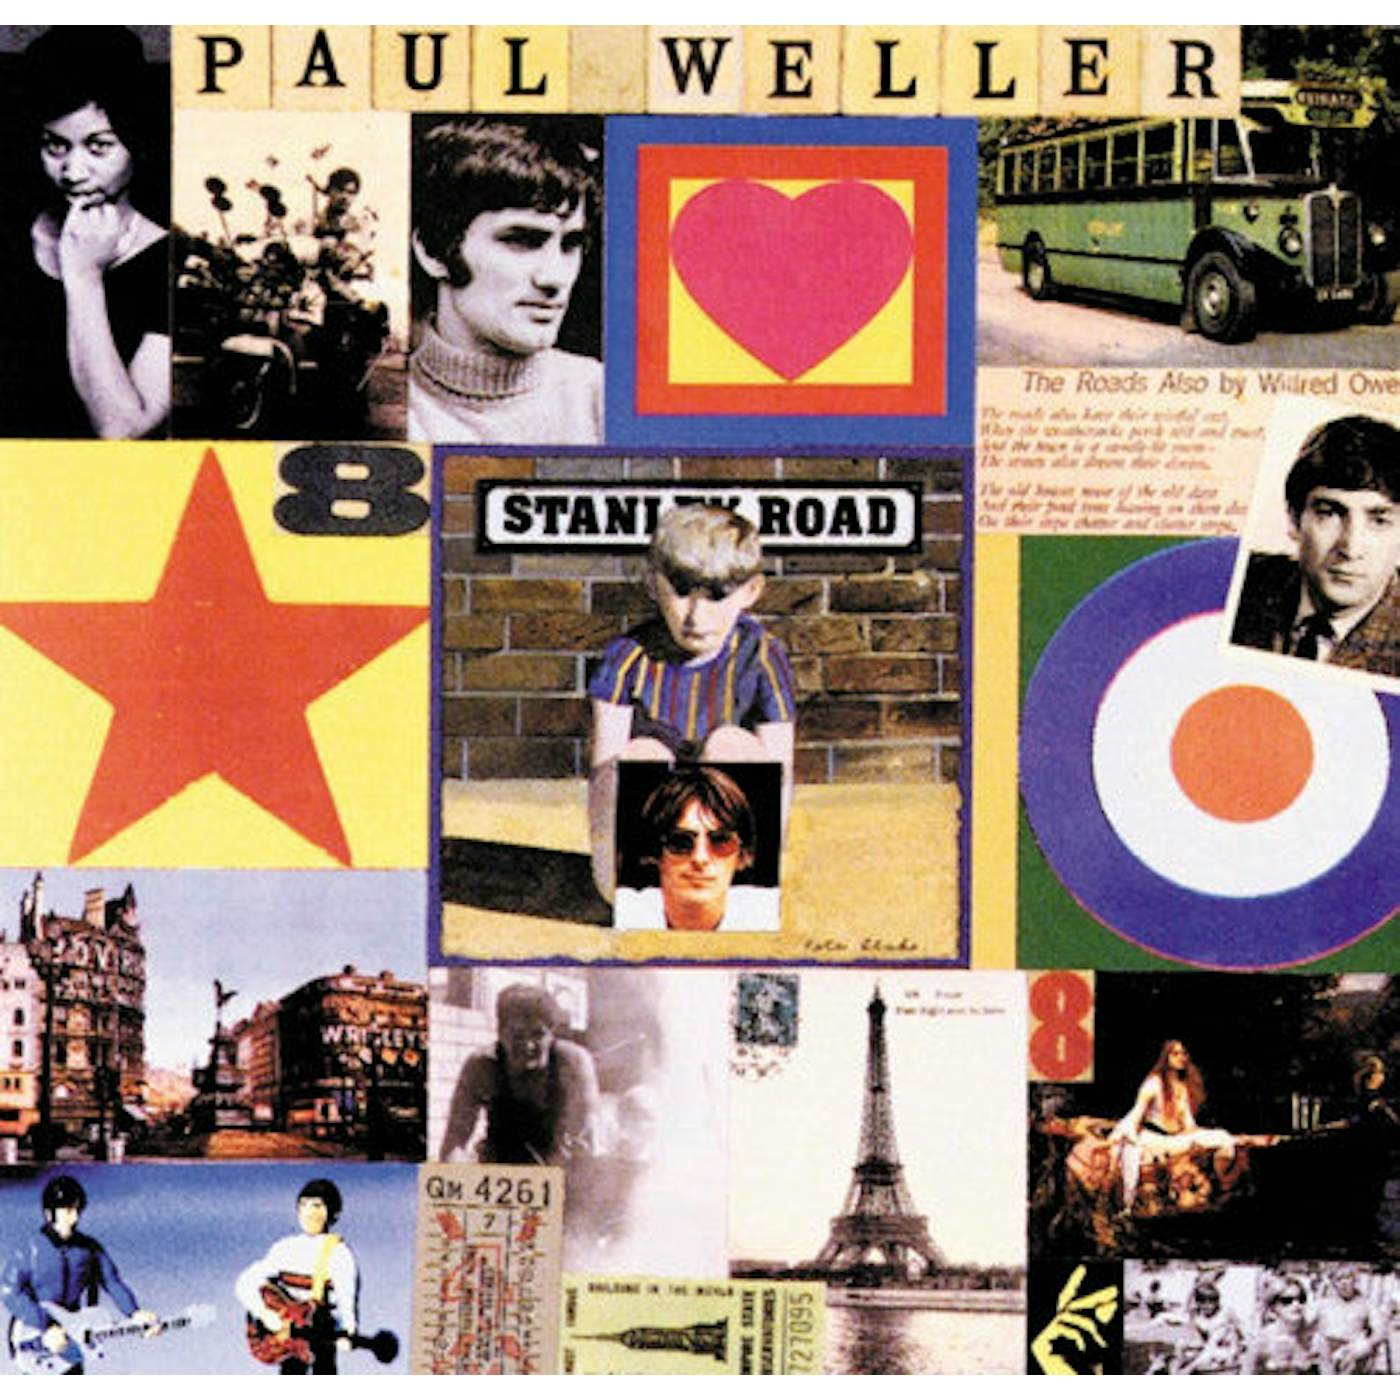 Paul Weller LP Vinyl Record - Stanley Road